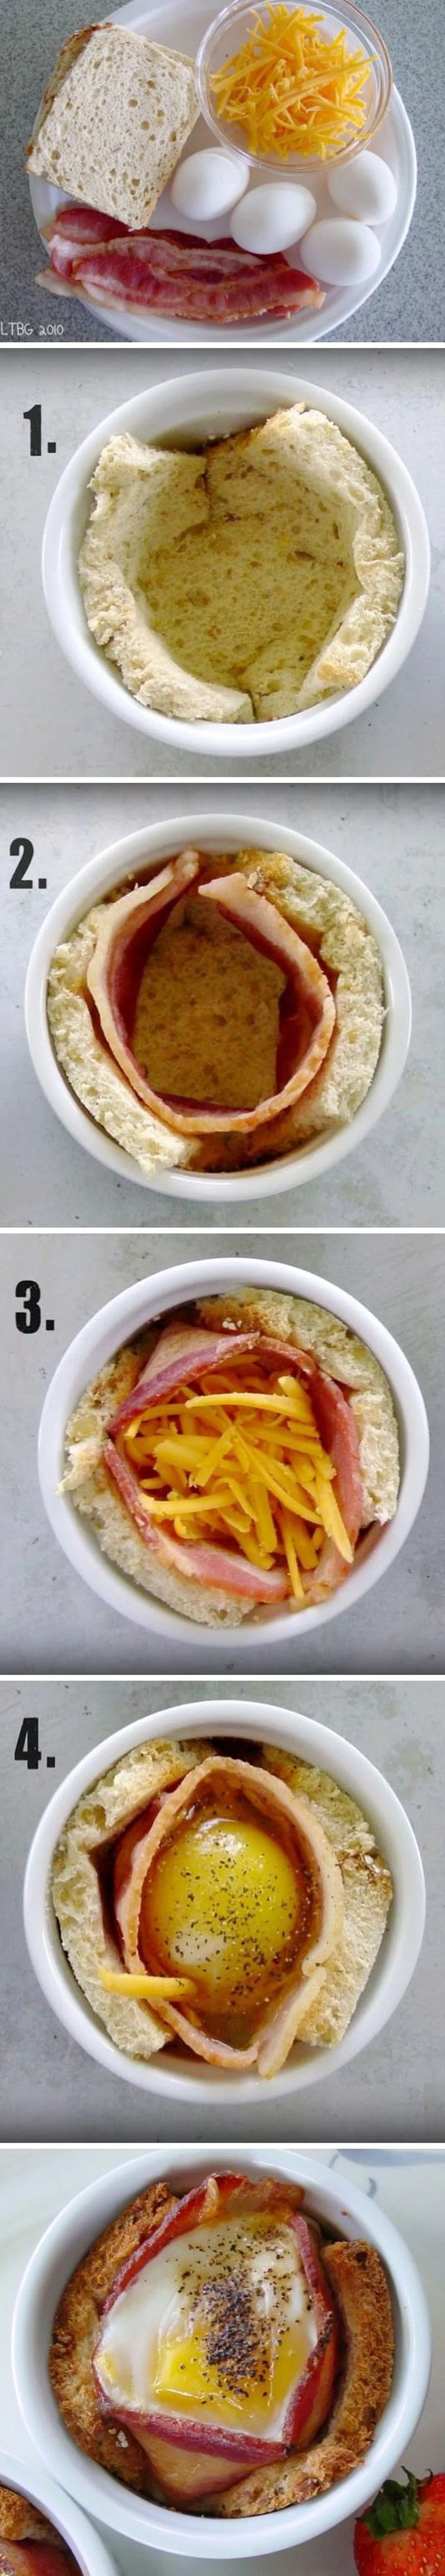 Pyszne śniadanie czyli jajko, bekon oraz ser zapiekane w grzance